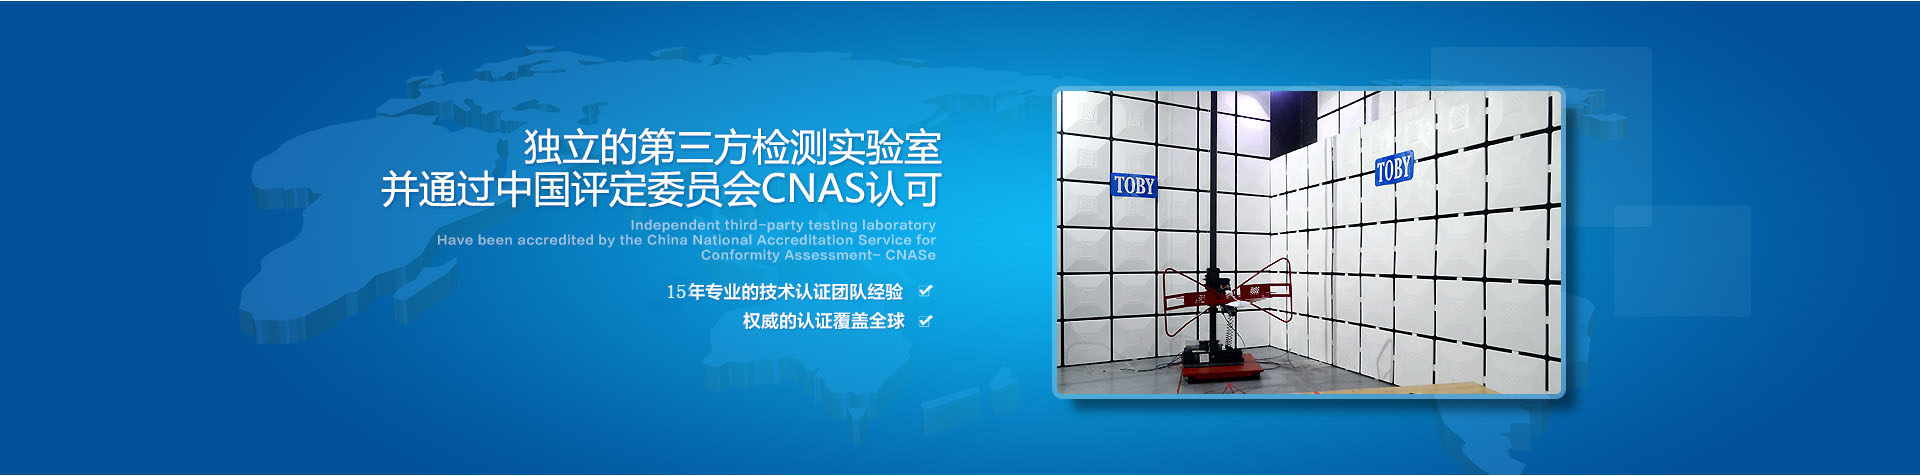 独立的第三方检测实验室通过中国评定委员会GNAS认可